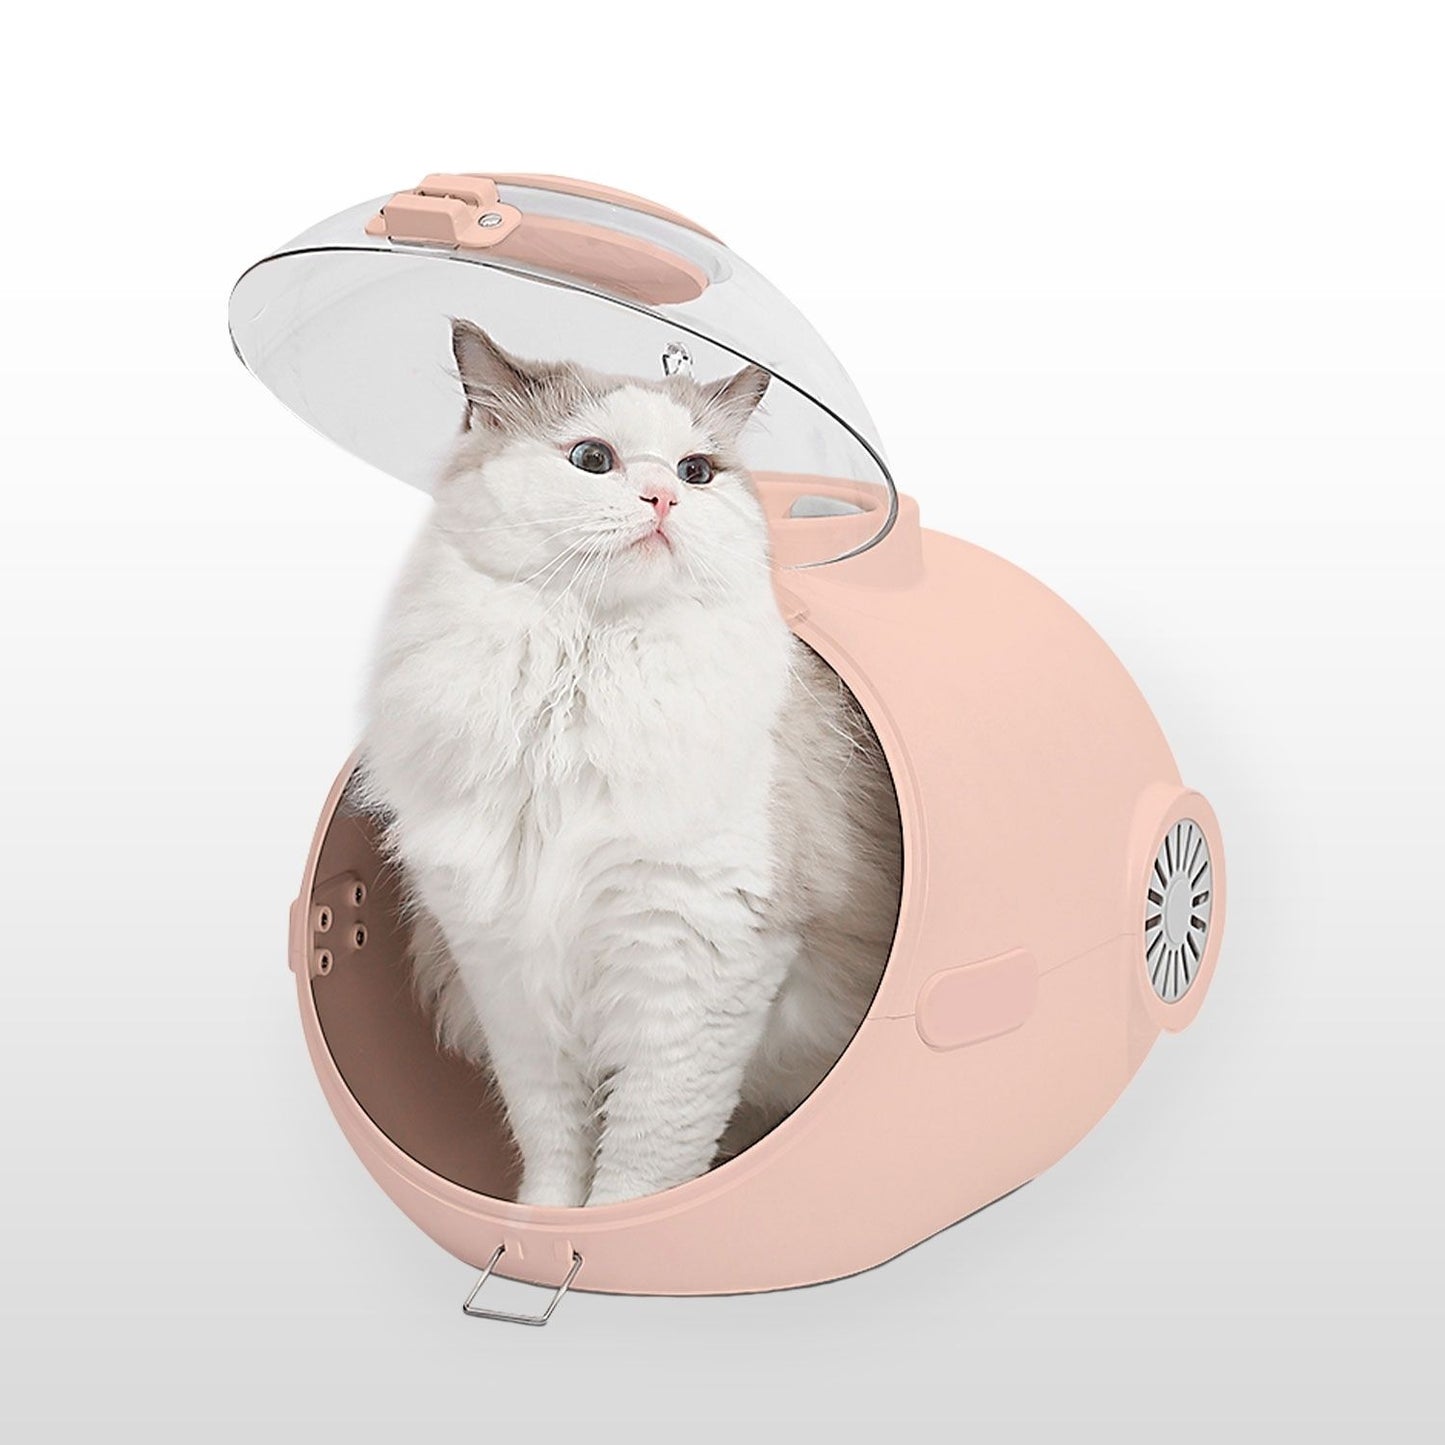 FLOOFI Smart Pet Carrier (Pink) FI-PC-142-AW